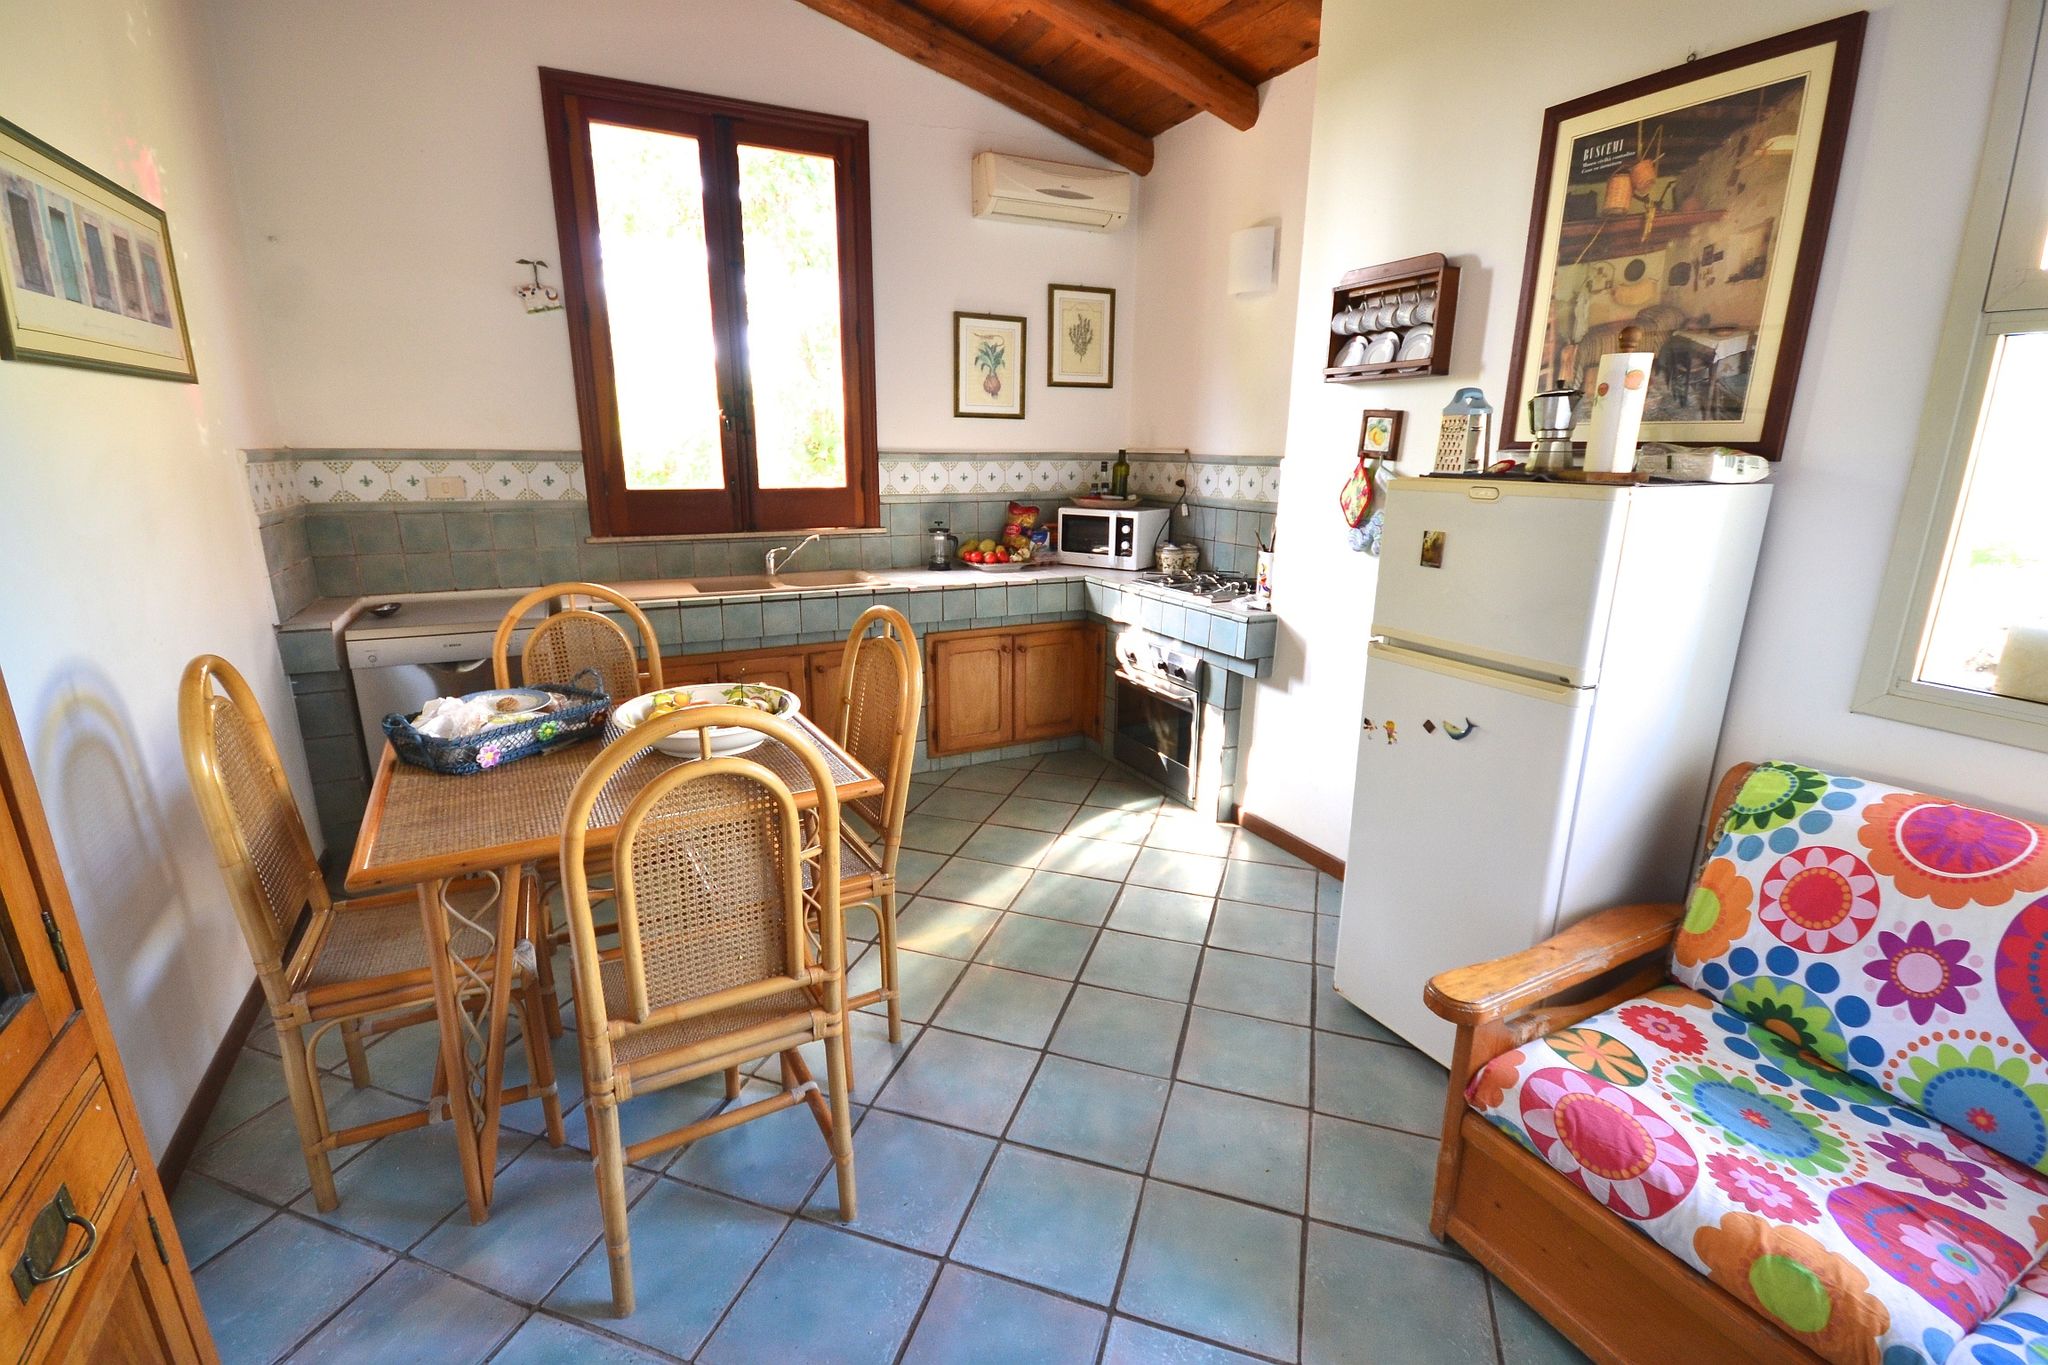 Maison de vacances couverte en Sicile avec terrasse privée